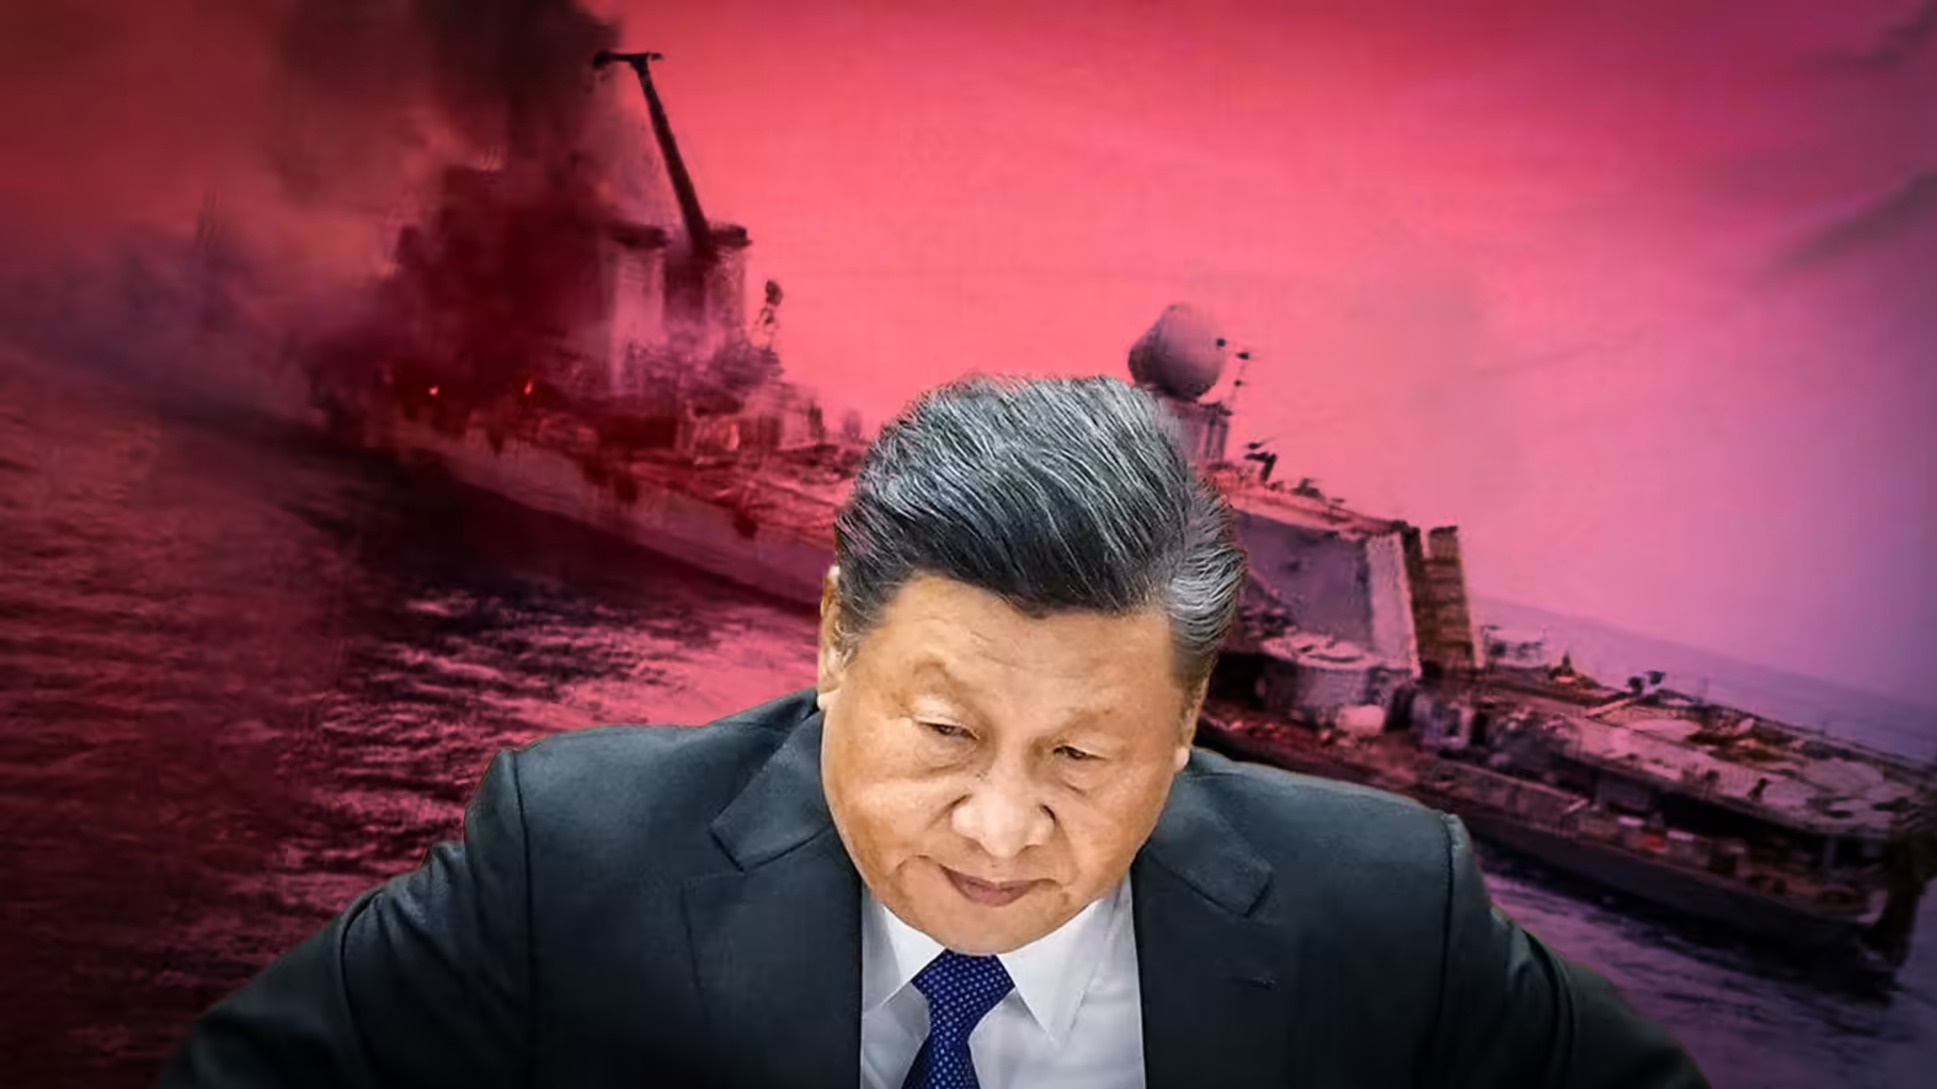 Khi hình ảnh được cho là soái hạm Moskva của hải quân Nga bị chìm vì trúng hỏa tiễn Ukraine được lan truyền trên mạng xã hội Telegram, Chủ Tịch Trung Quốc Tập Cận Bình có thể băn khoăn về các công nghệ tàu sân bay của hải quân nước ông ta. Ảnh: Kyodo/ AP, đồ họa: Nikkei